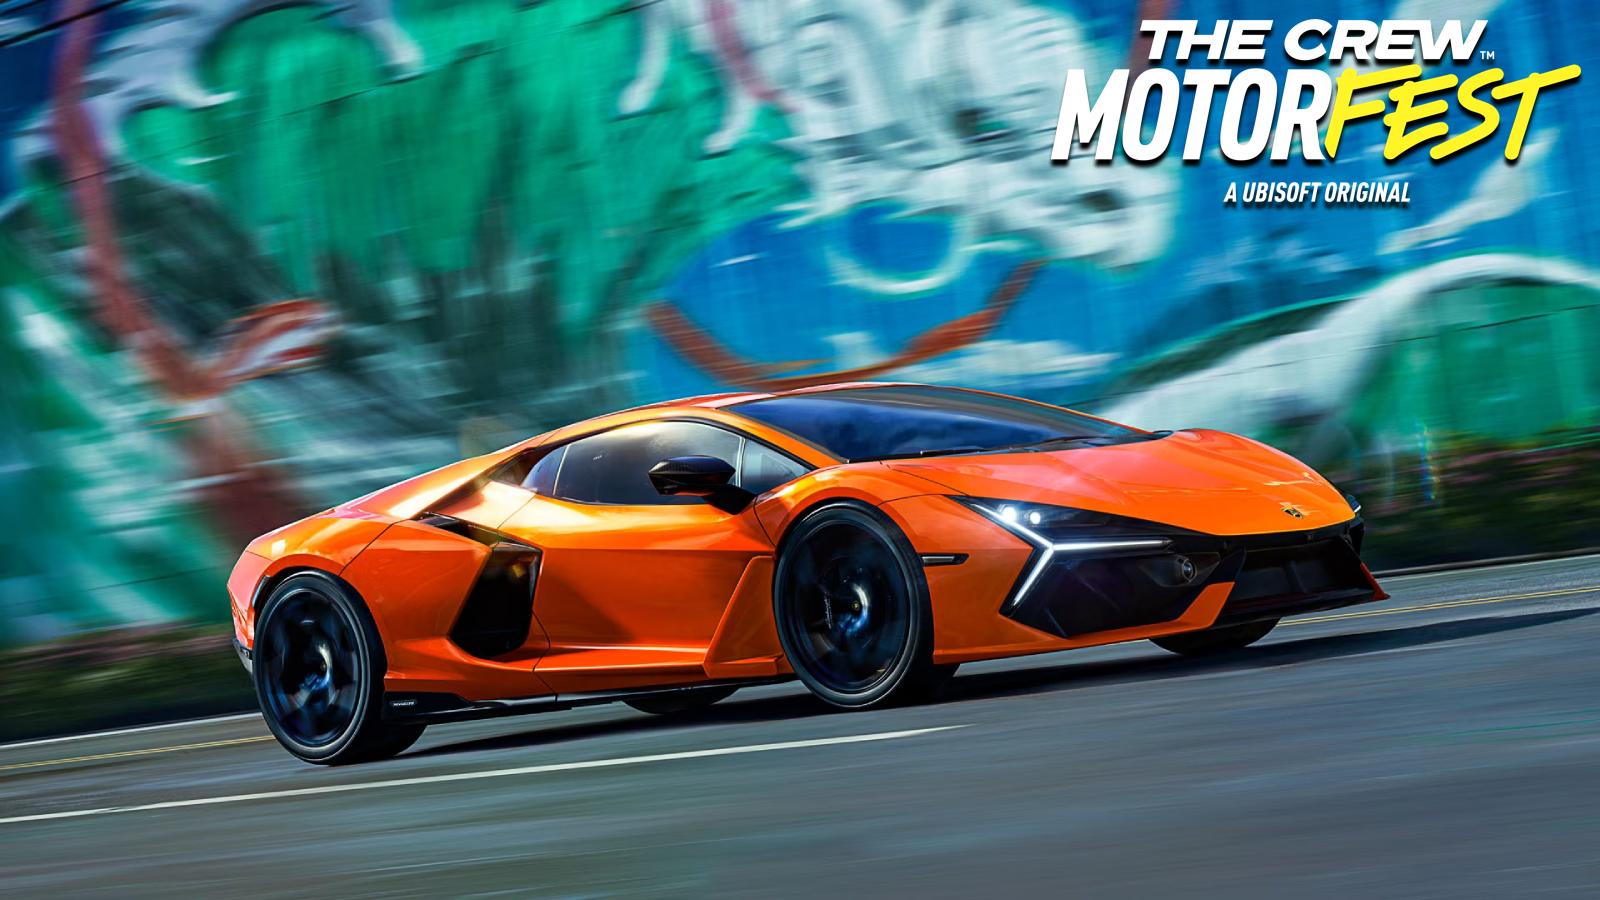 an image of an orange Lamborghini in The Crew Motorfest